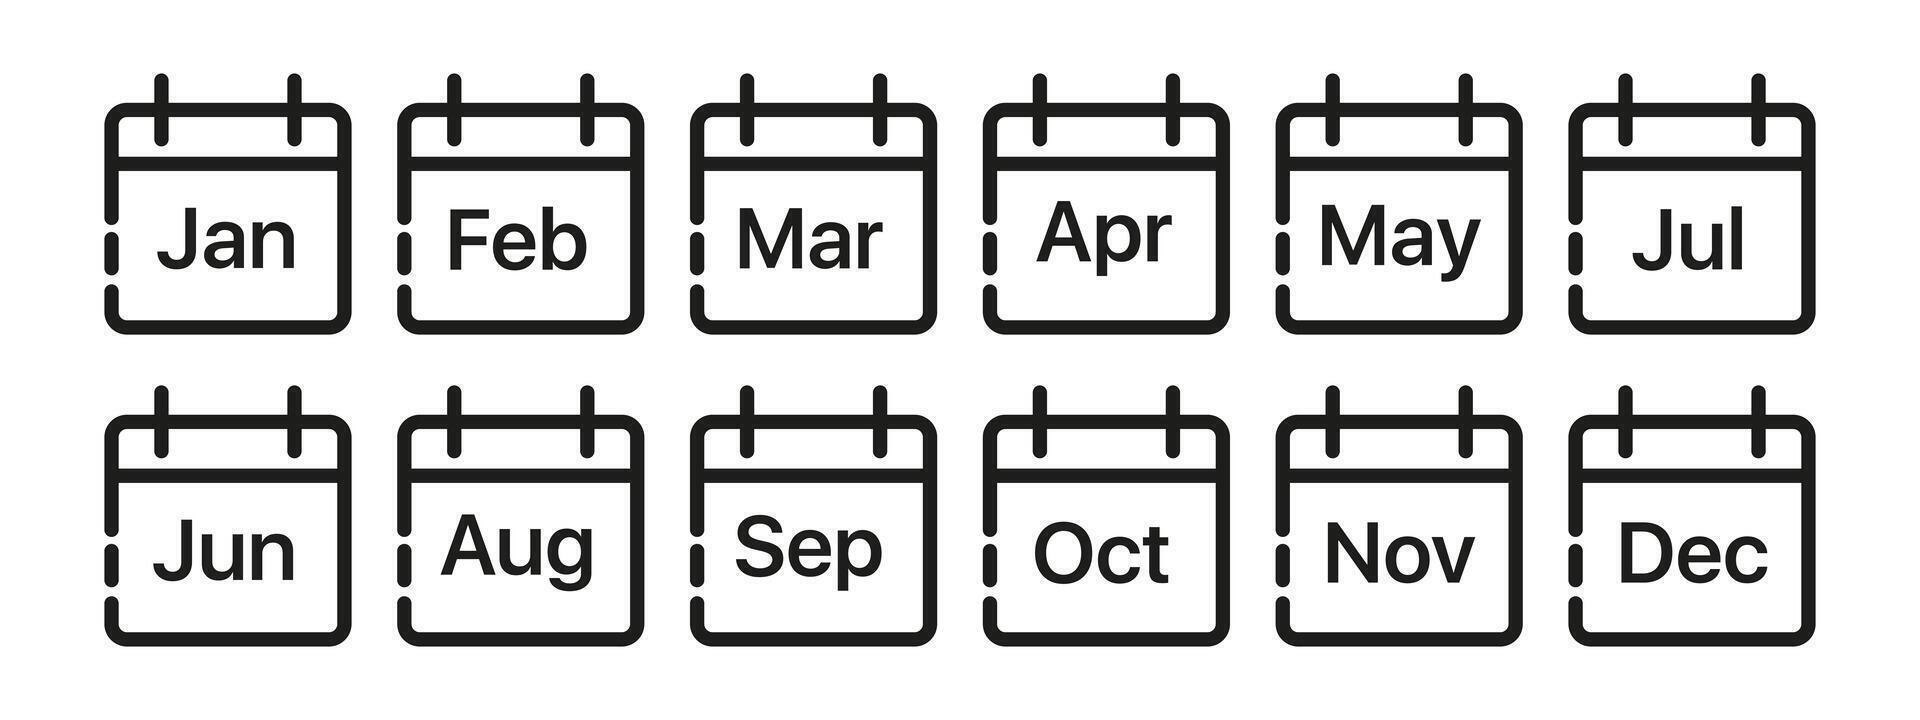 kalender met maandelijks en dagelijks schema's, datums, en evenementen. kalender, schema's, datums, evenementen, planner, organisatie. vector